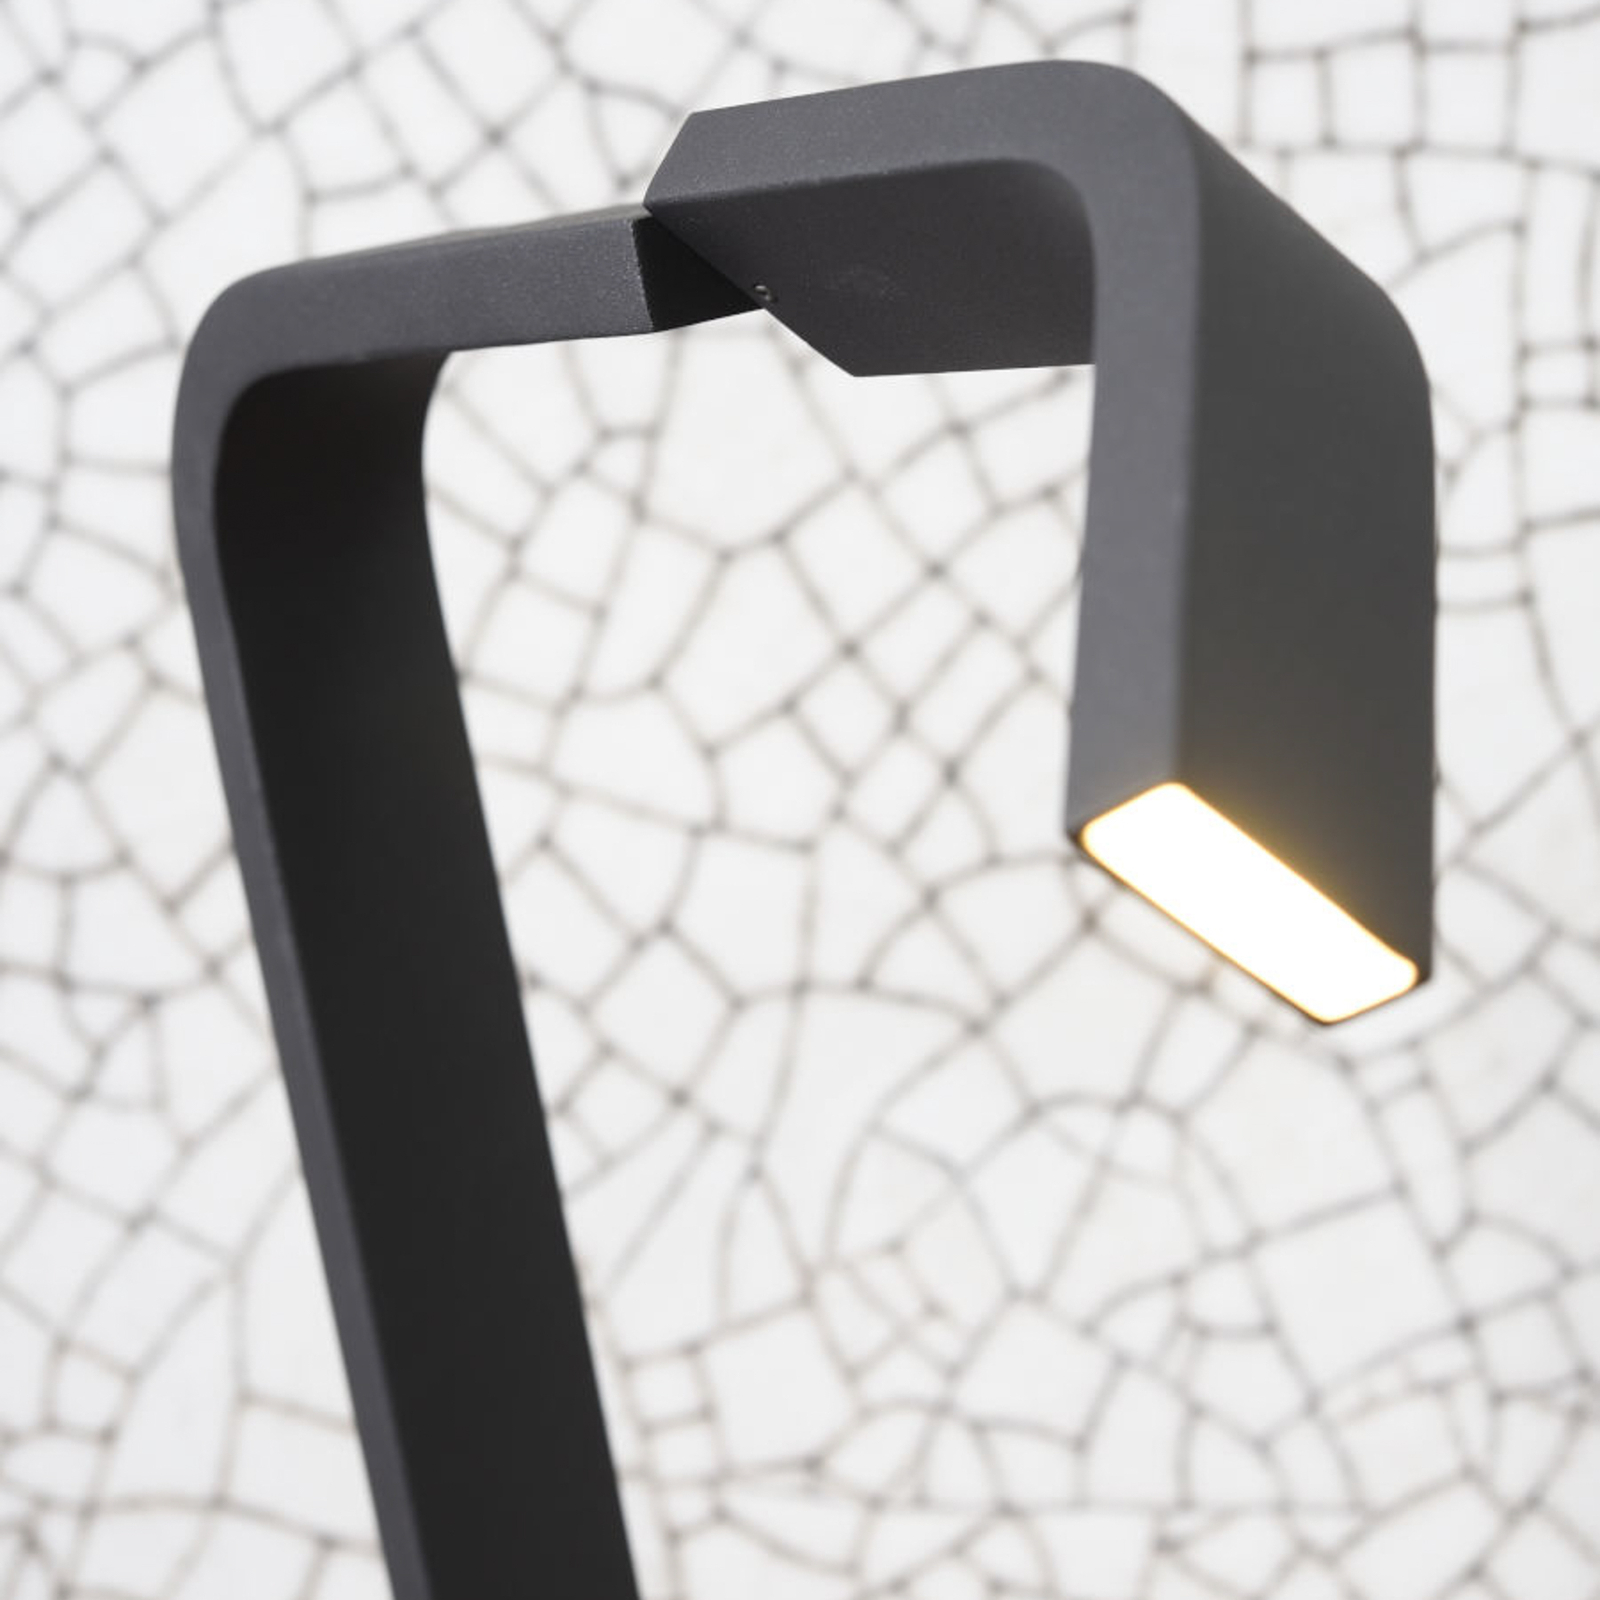 A RoMi Zurich LED-es asztali lámpáról van szó, fekete színben